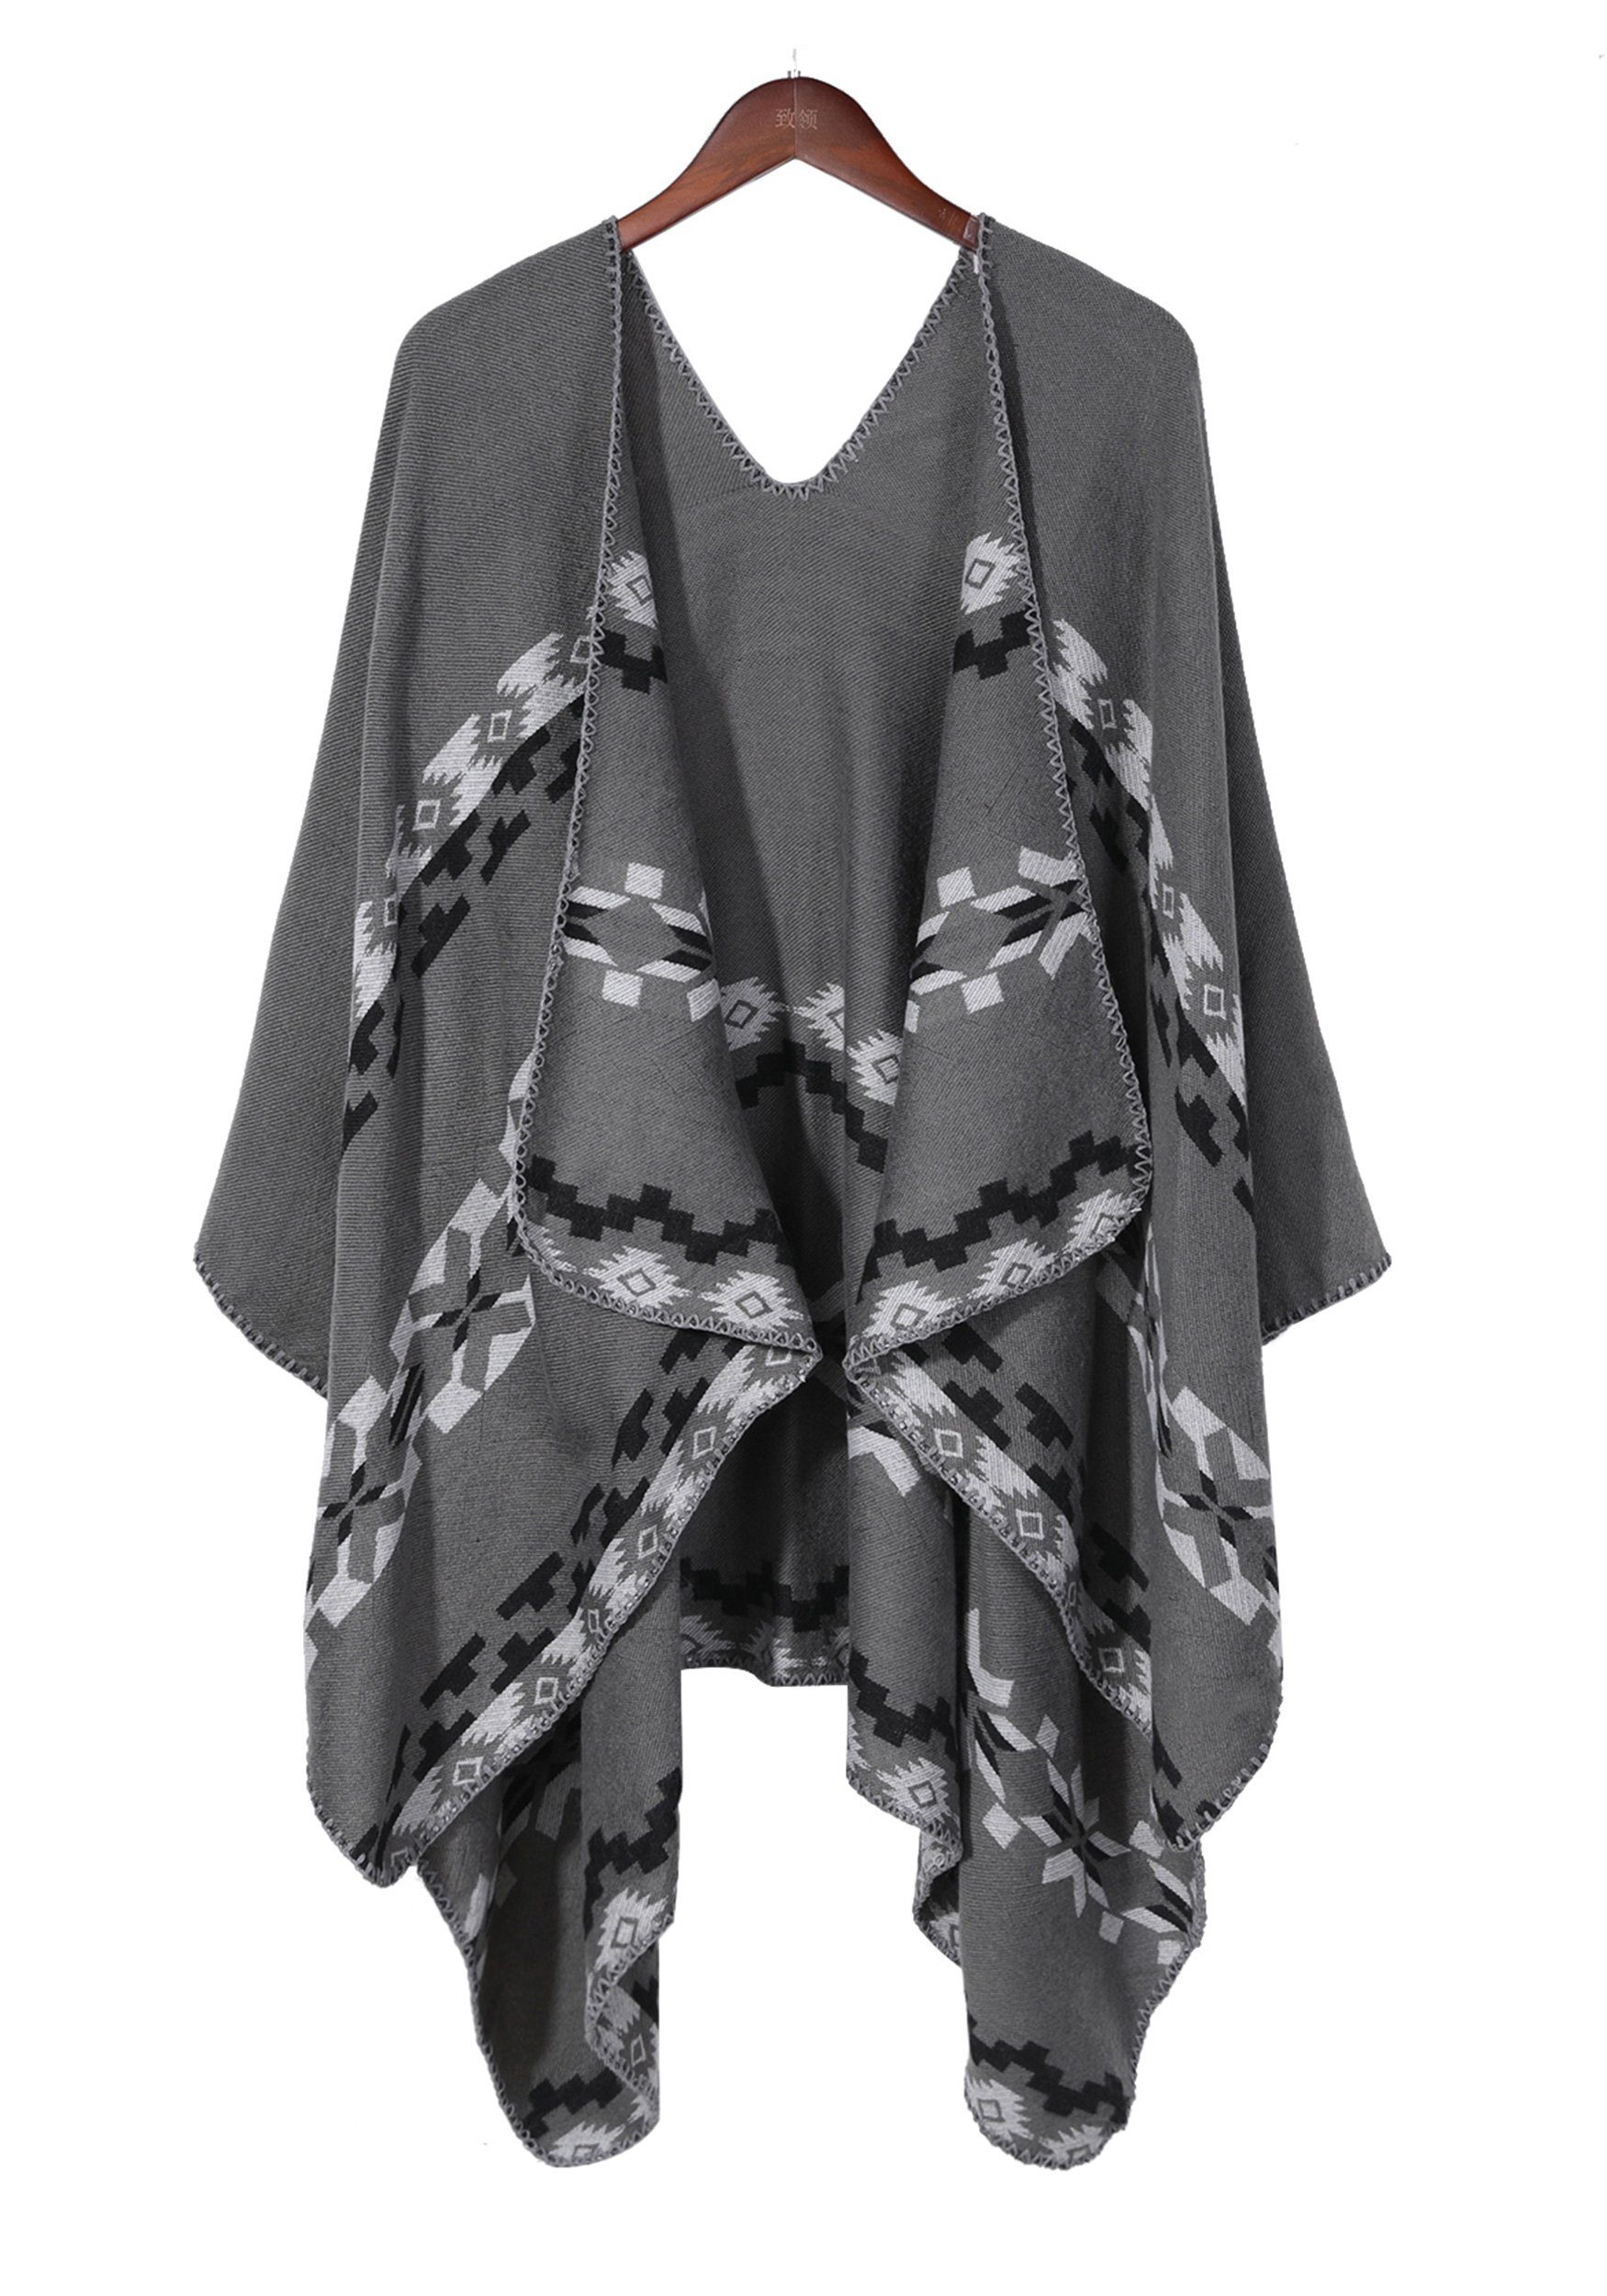 MAGICSHE Regenponcho Open mit und Damen Retro Argyle-Muster Front Schal print,elegant Design grau stilvoll Umkenrbares